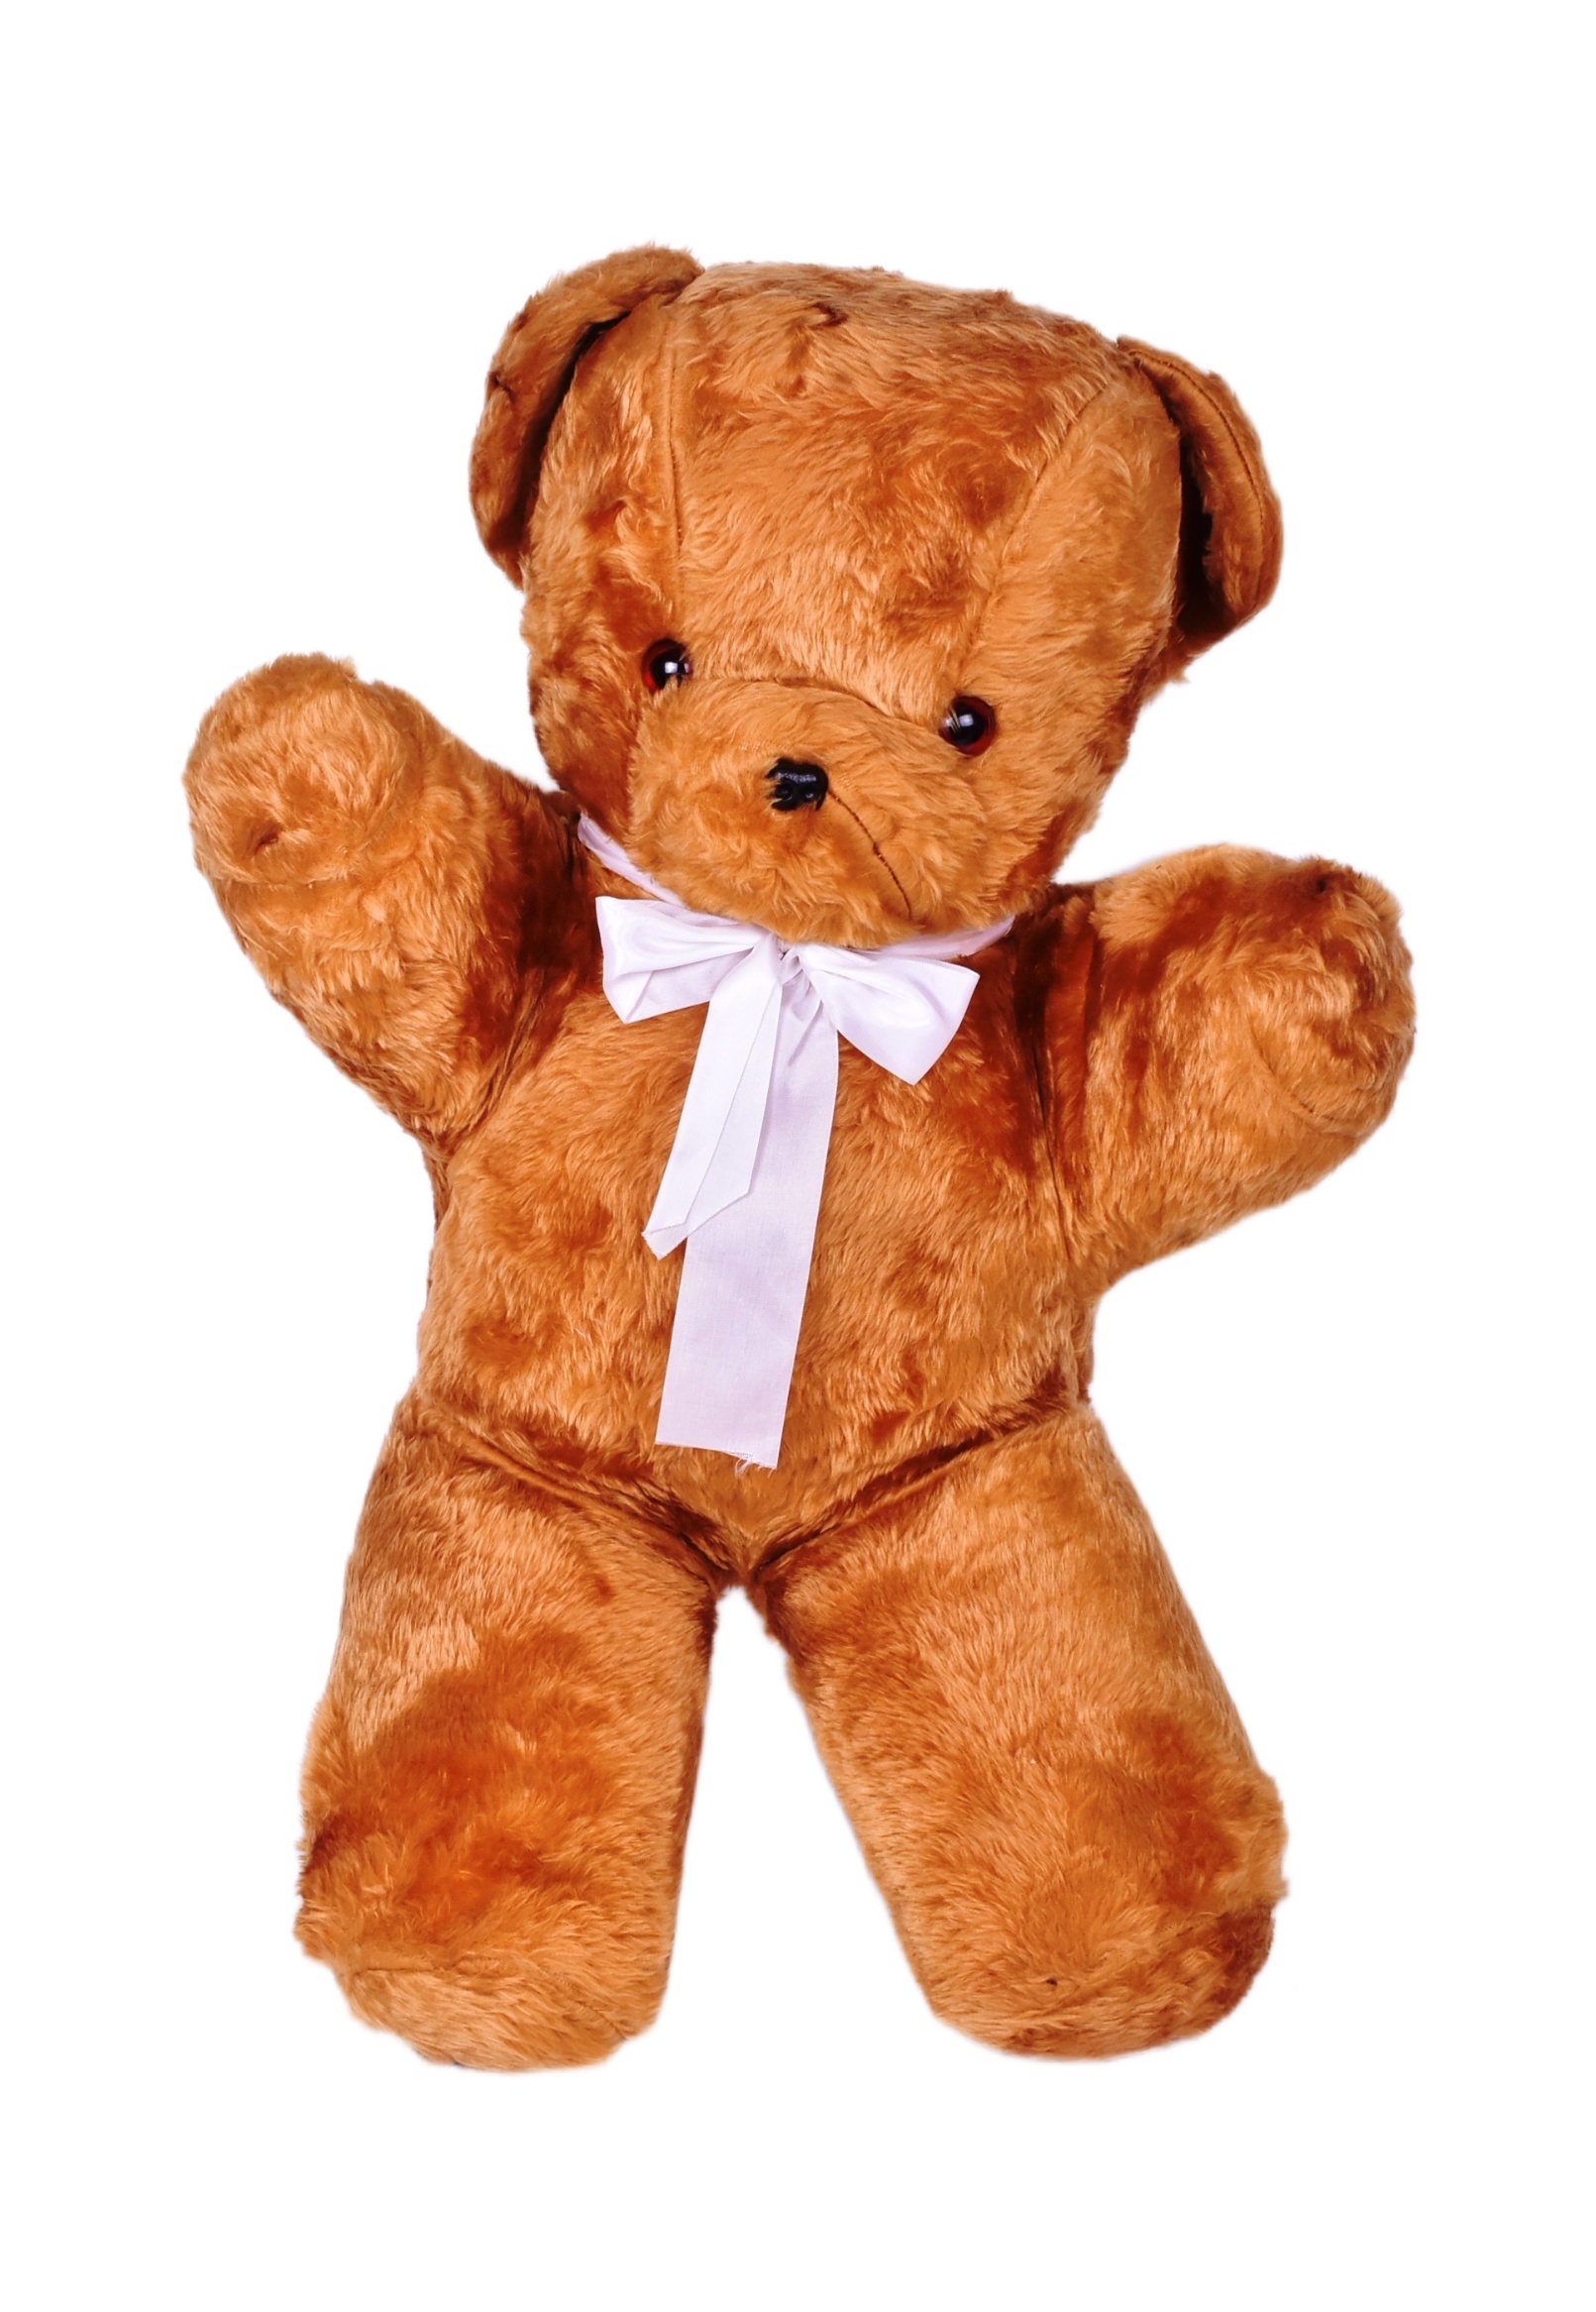 TEDDY BEARS - LARGE SOFT TOY TEDDY BEAR